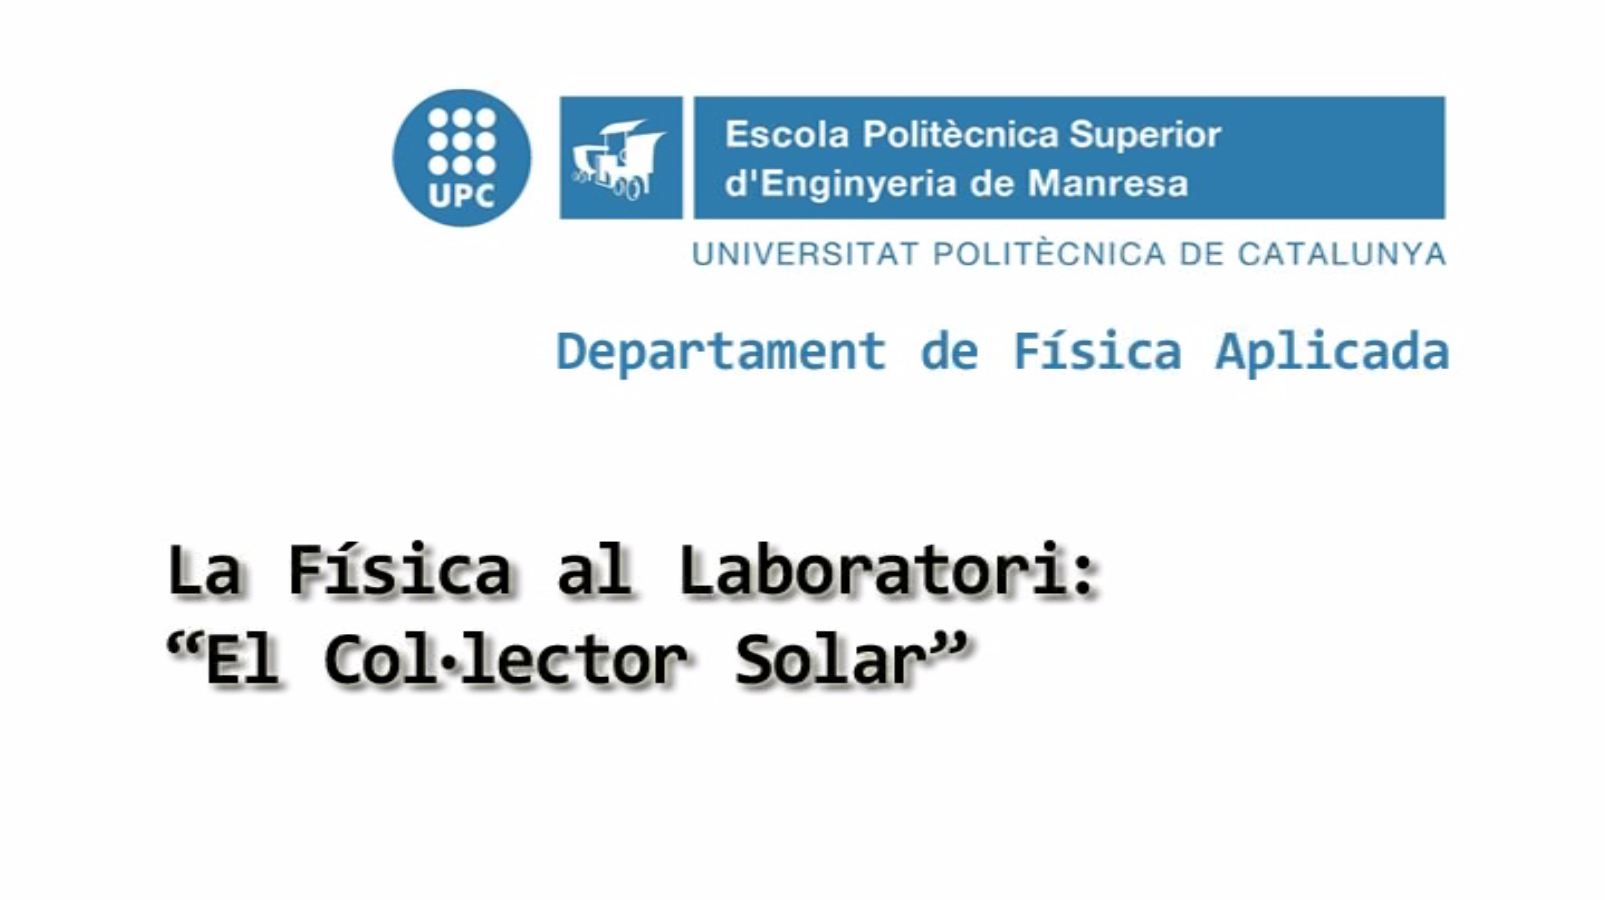 La Física al Laboratori: "El col·lector solar”